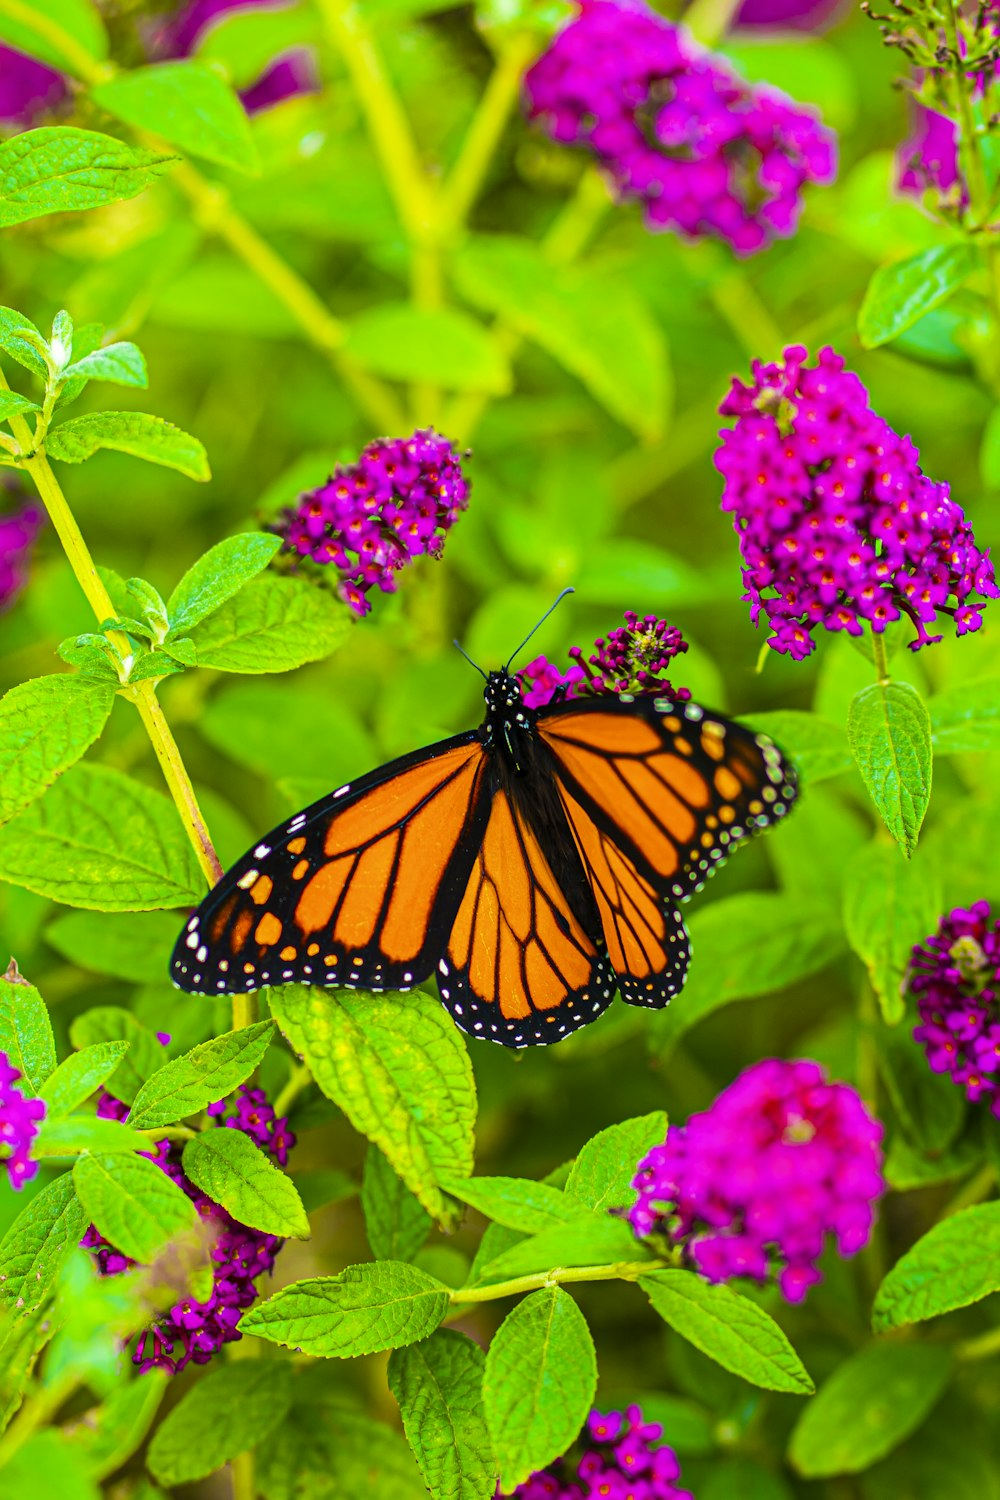 fotografia ravvicinata della farfalla monarca appollaiata sulla pianta